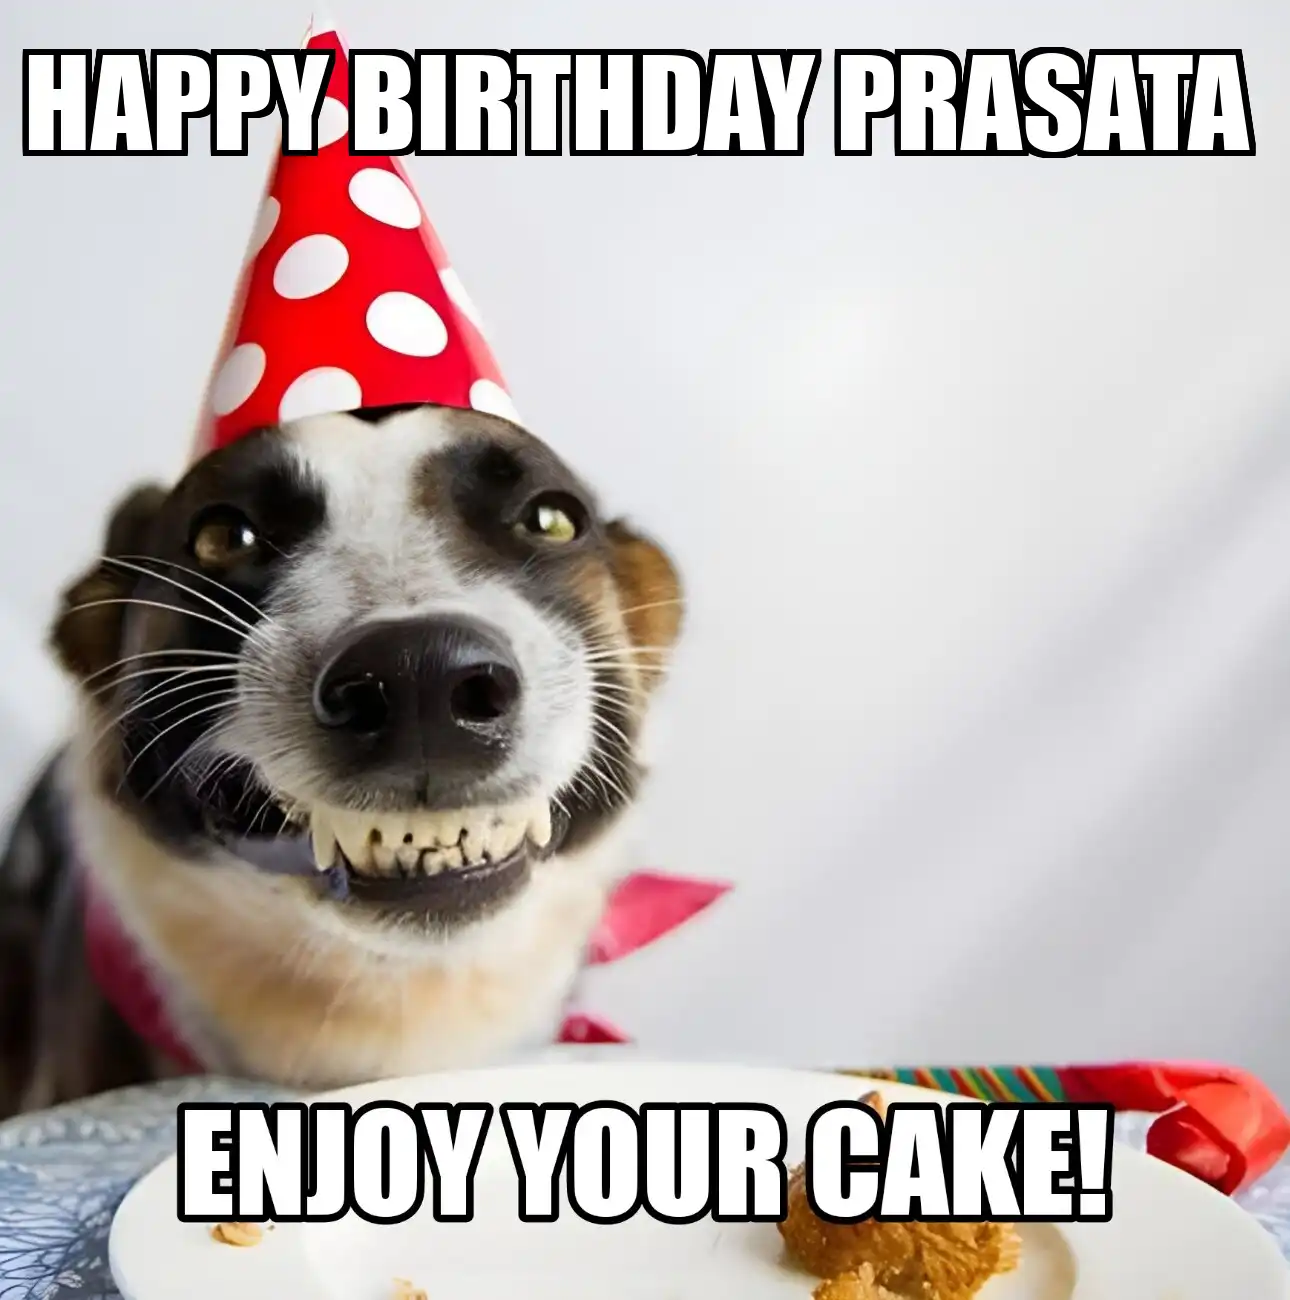 Happy Birthday Prasata Enjoy Your Cake Dog Meme